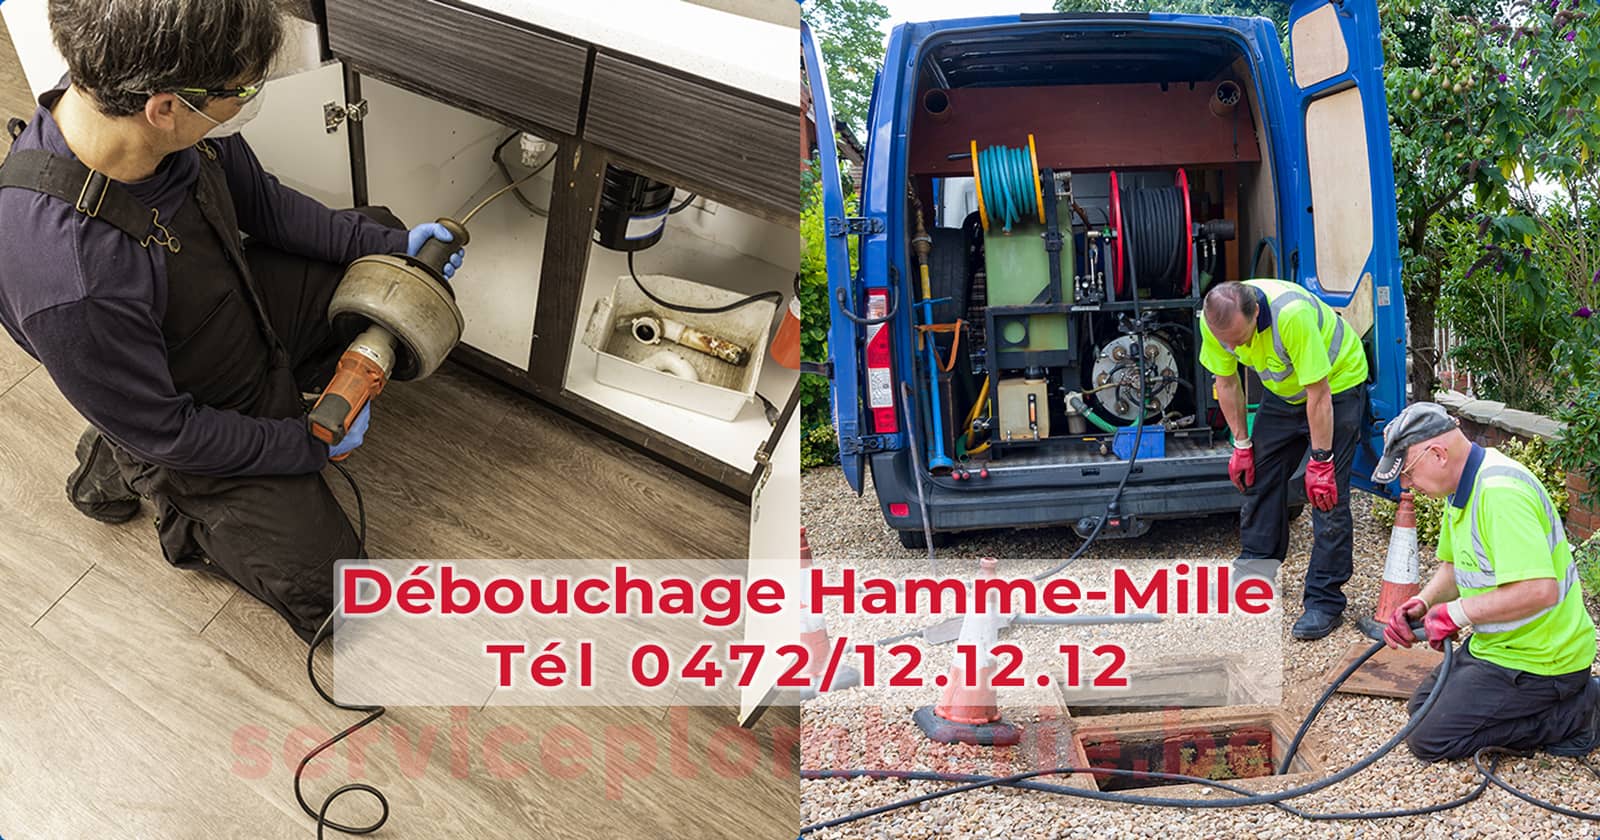 Débouchage Hamme-Mille d'égout Service Plomberie Tél 0472/12.12.12